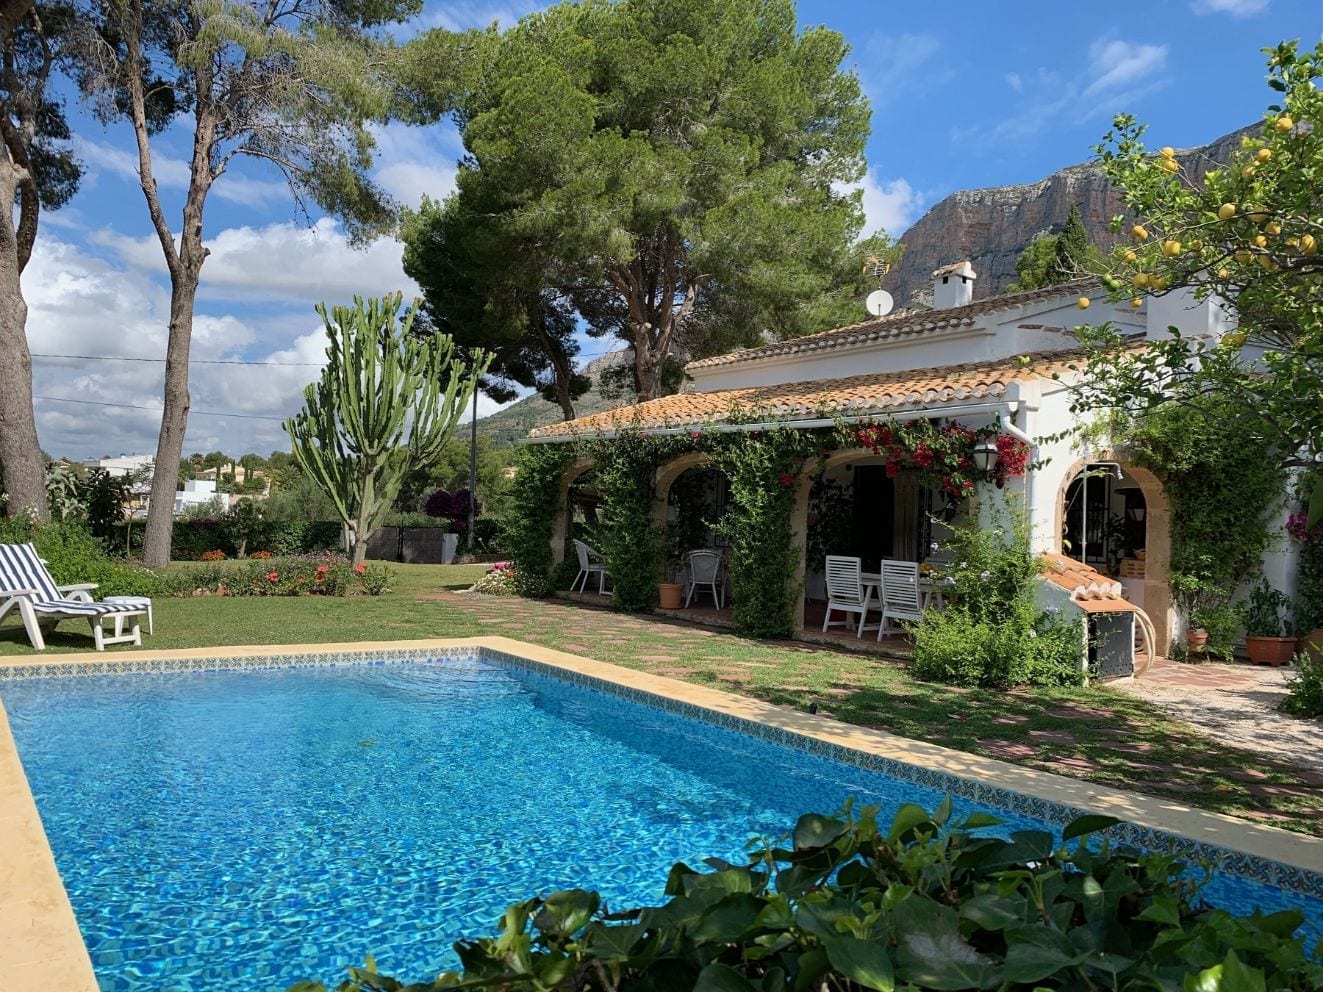 Tuin met zwembad van vakantiewoning verhuren Spanje